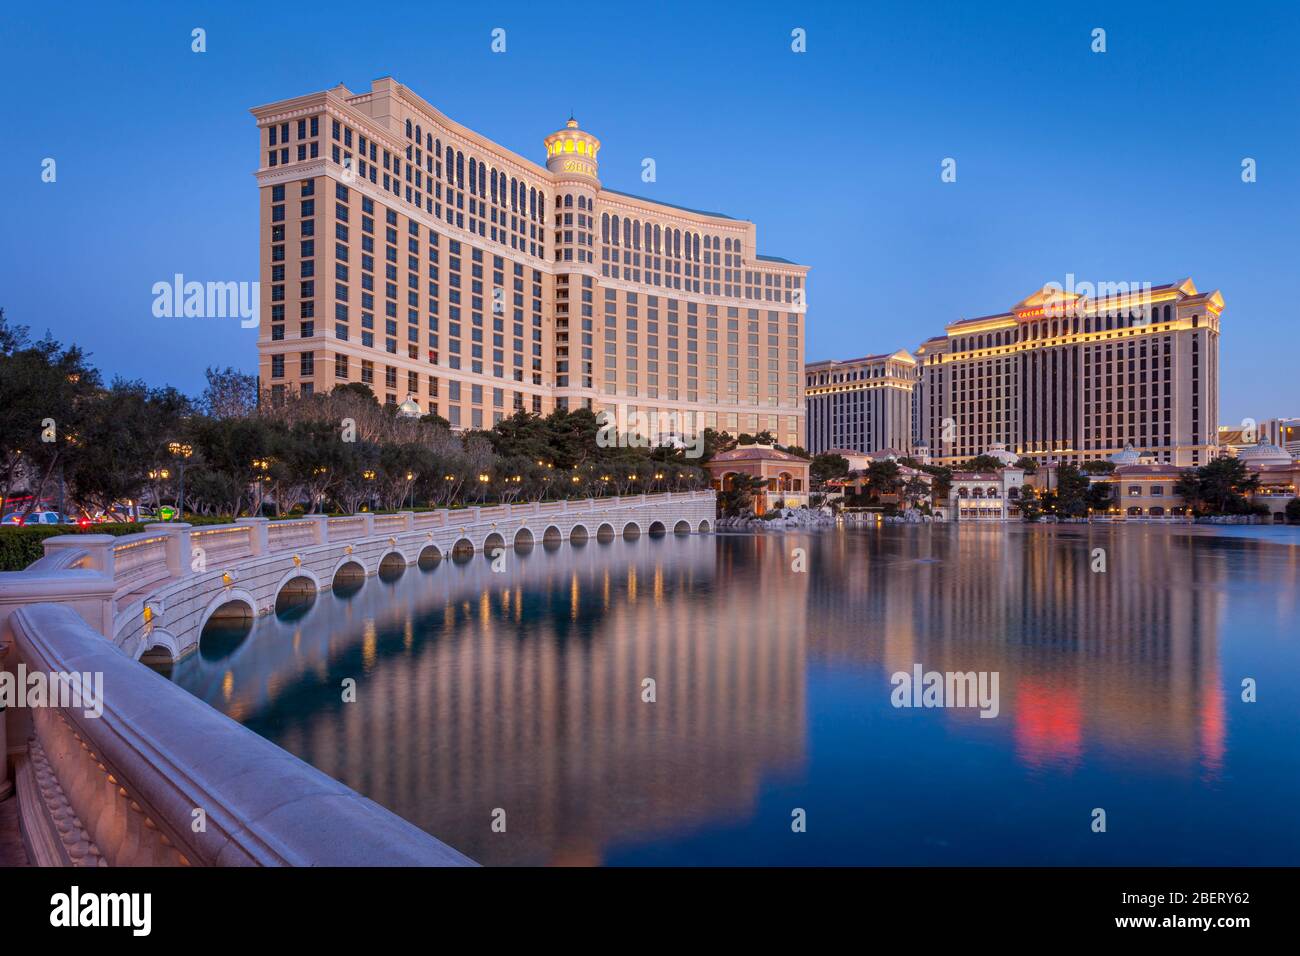 Das Bellagio Hotel und Caesars Palace Casinos in der frühen Morgendämmerung, Las Vegas, Nevada, USA Stockfoto